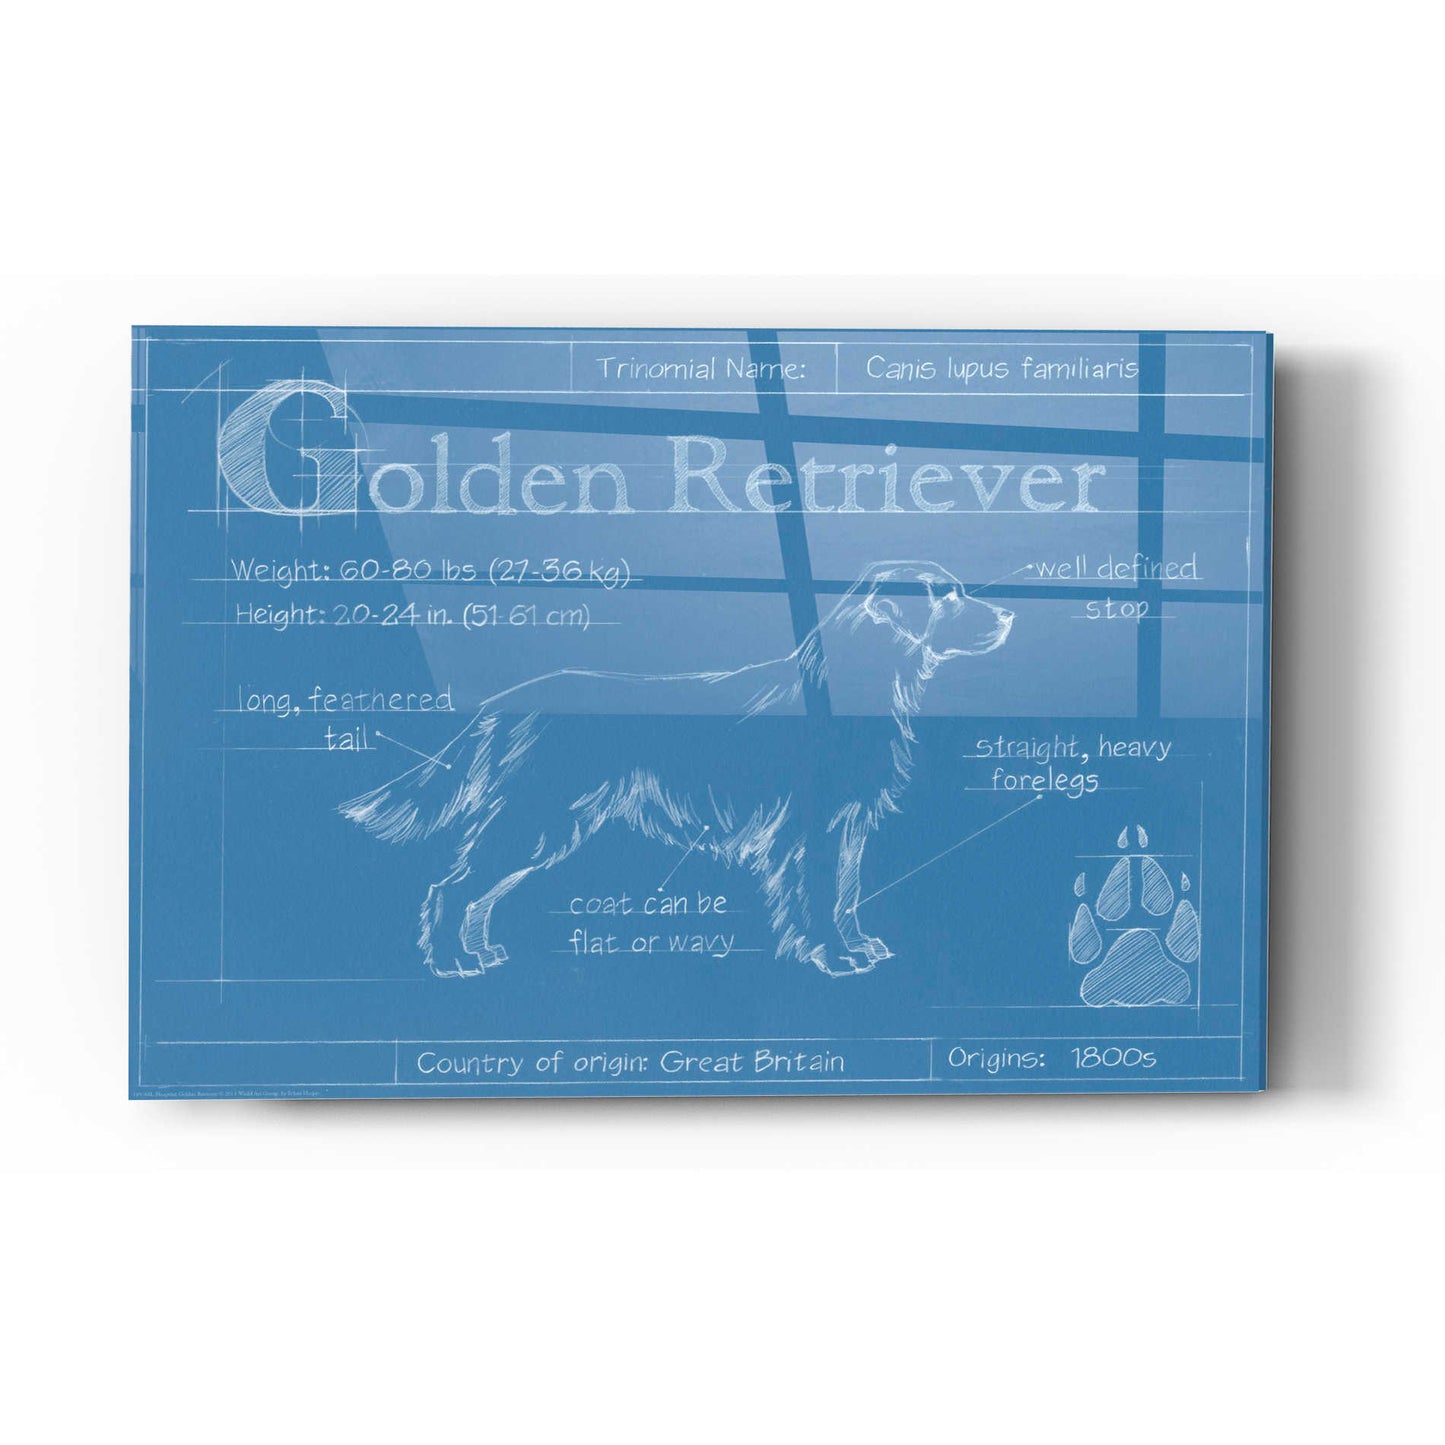 Epic Art 'Blueprint Golden Retriever' by Ethan Harper Acrylic Glass Wall Art,16x24